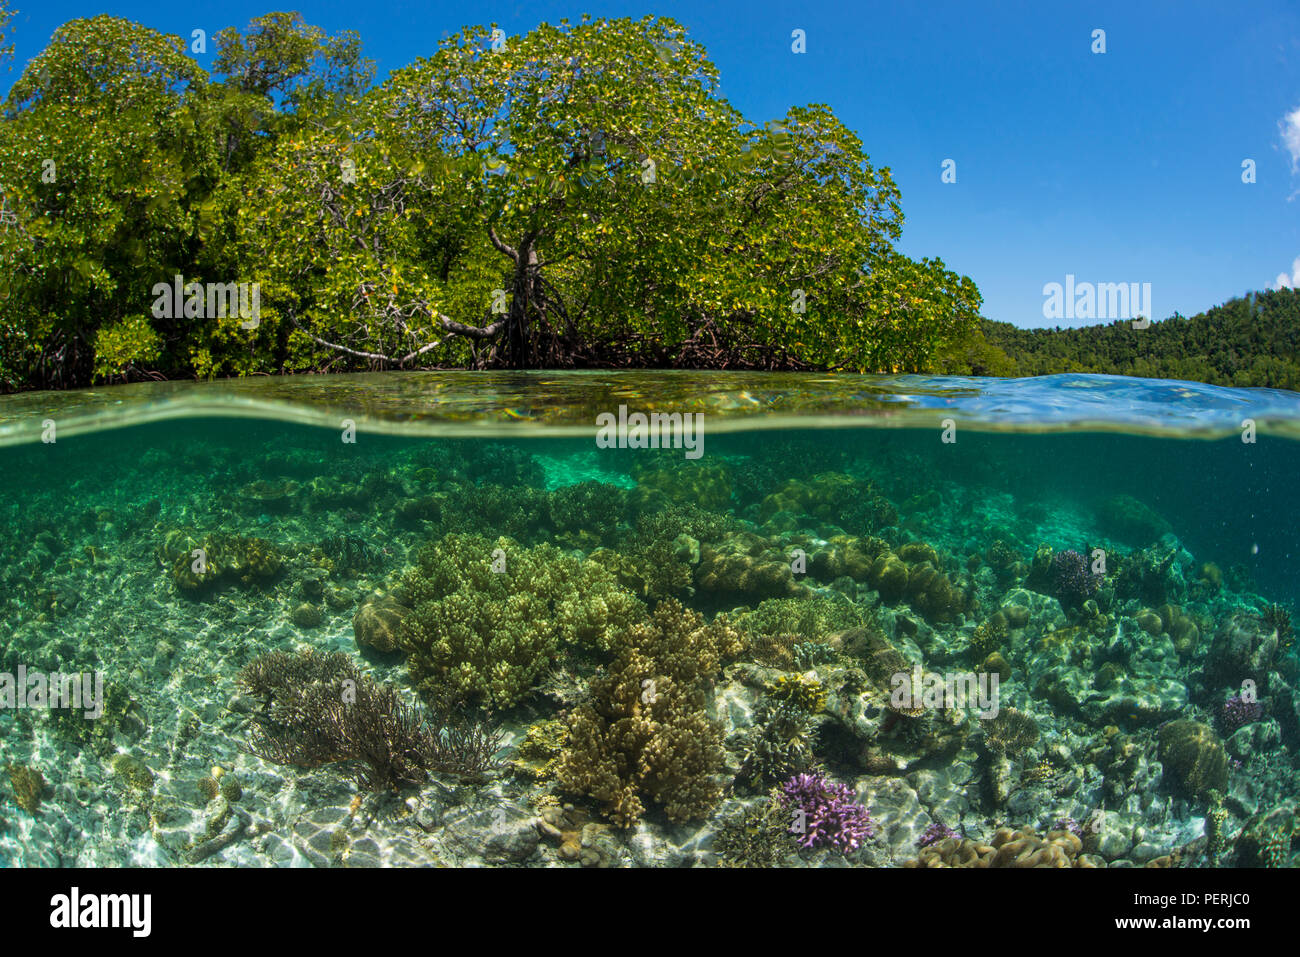 Eine Split-level Unterwasser Foto des Korallenriffs in klarem, blauem Wasser, mit Mangroven und blauer Himmel über Wasser, bei Yangefo, Waigeo, Raja Ampat Marine Stockfoto